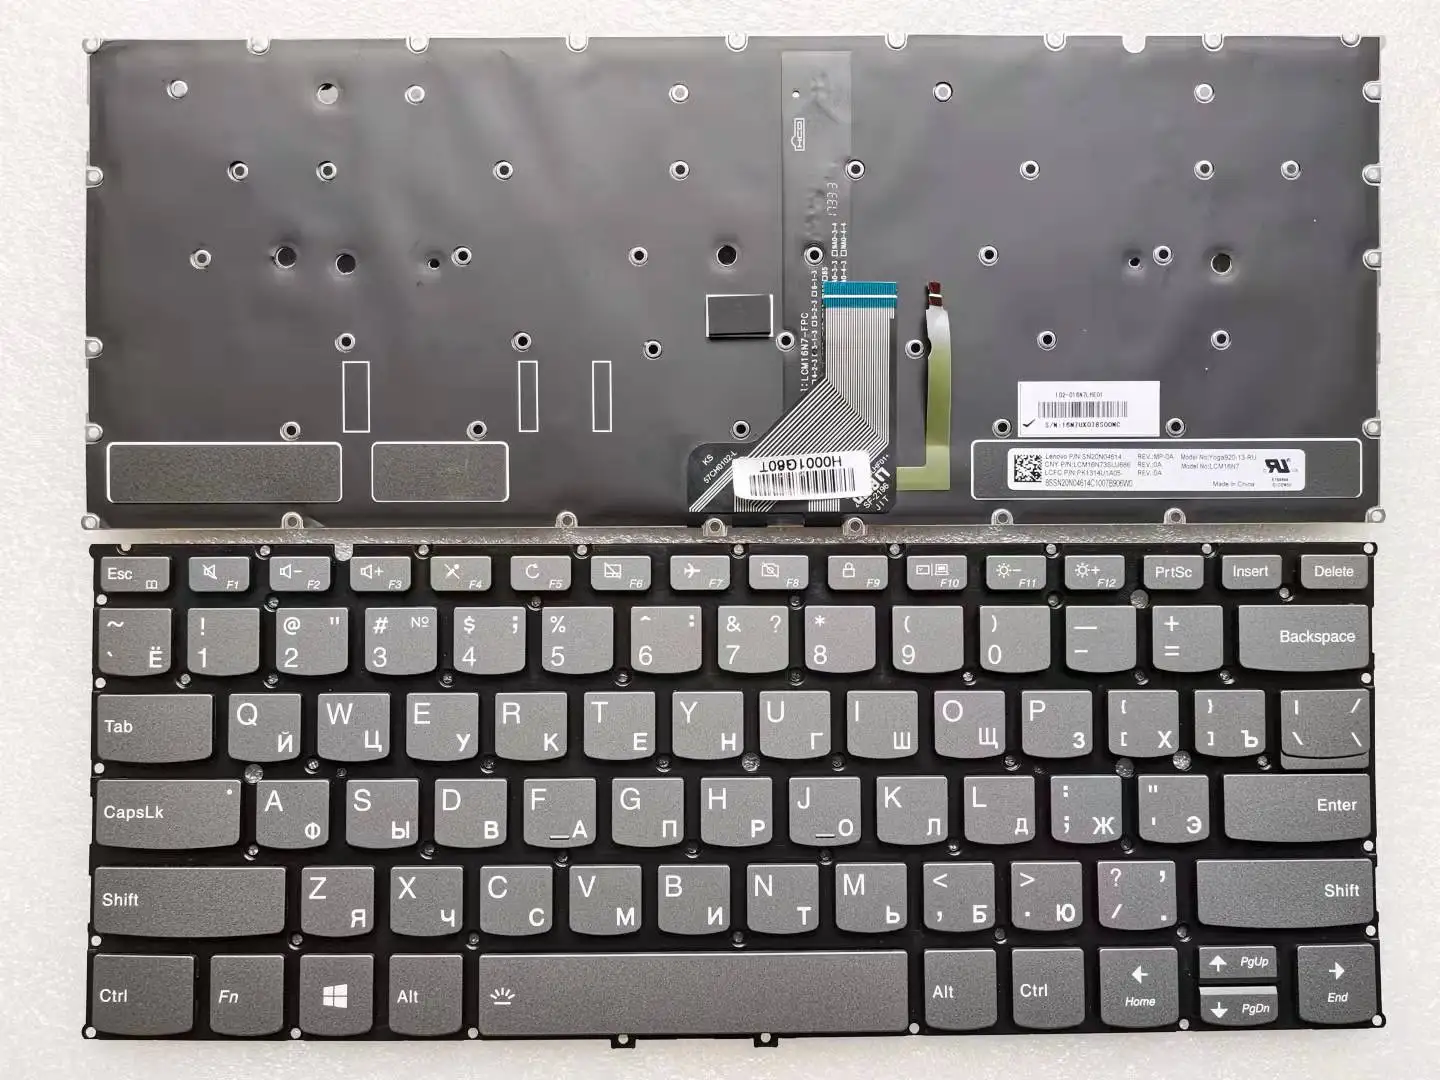 

New Original US Russian Latin Keyboard For Lenovo Ideapad Yoga 920-13 920-13IKB 920 13ISK LCM16N7 Grey with Backlit RU LA